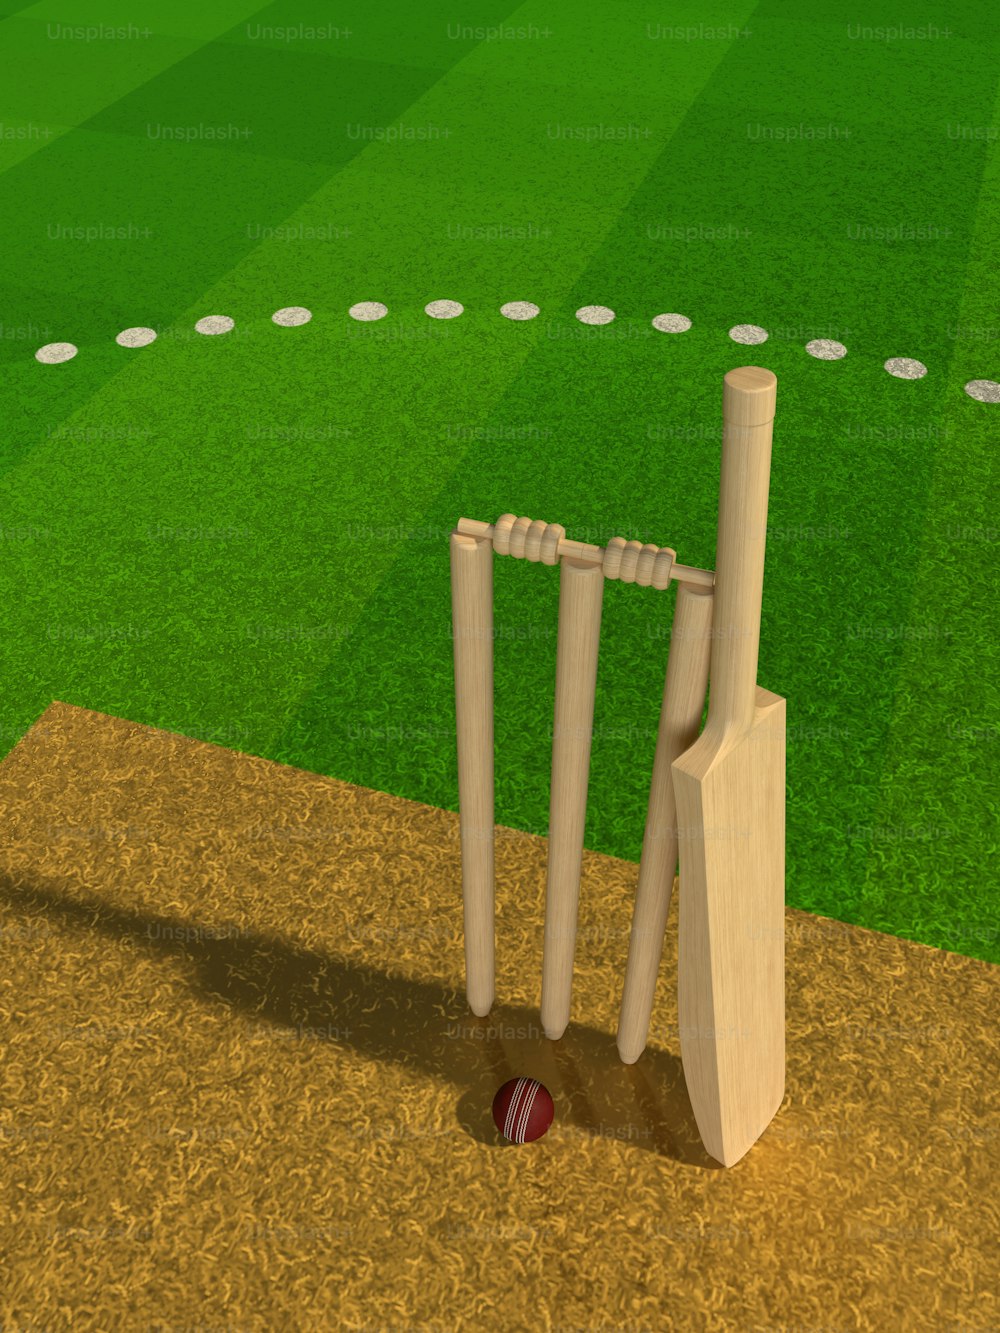 Un'immagine 3D di un campo da cricket con una mazza e una palla